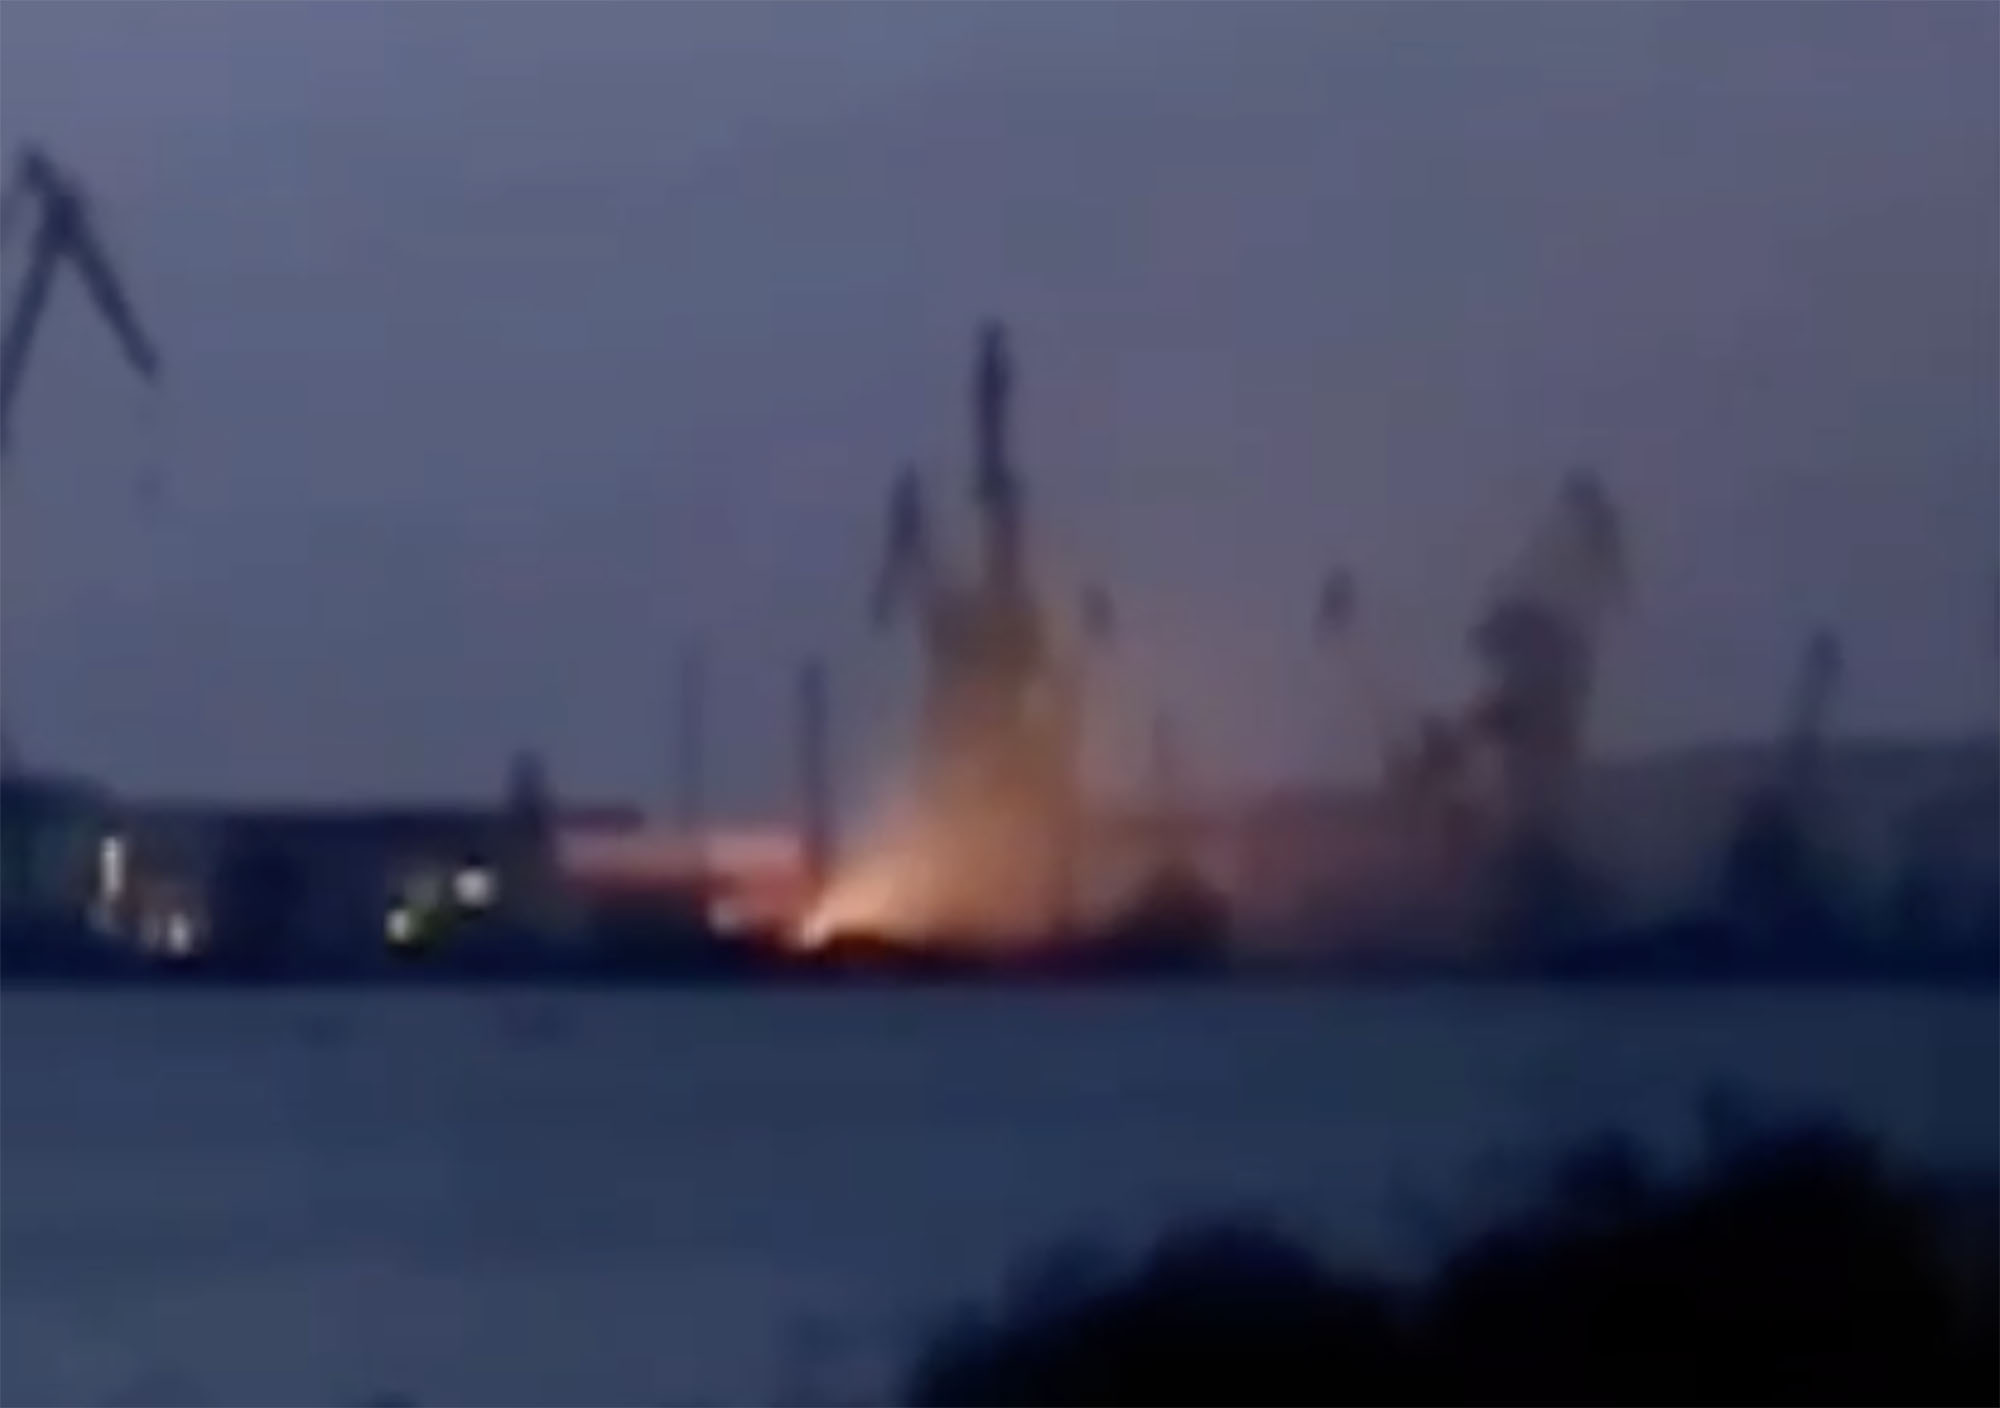 Es wird davon ausgegangen, dass die Explosion das Schiff außer Betrieb gesetzt hat